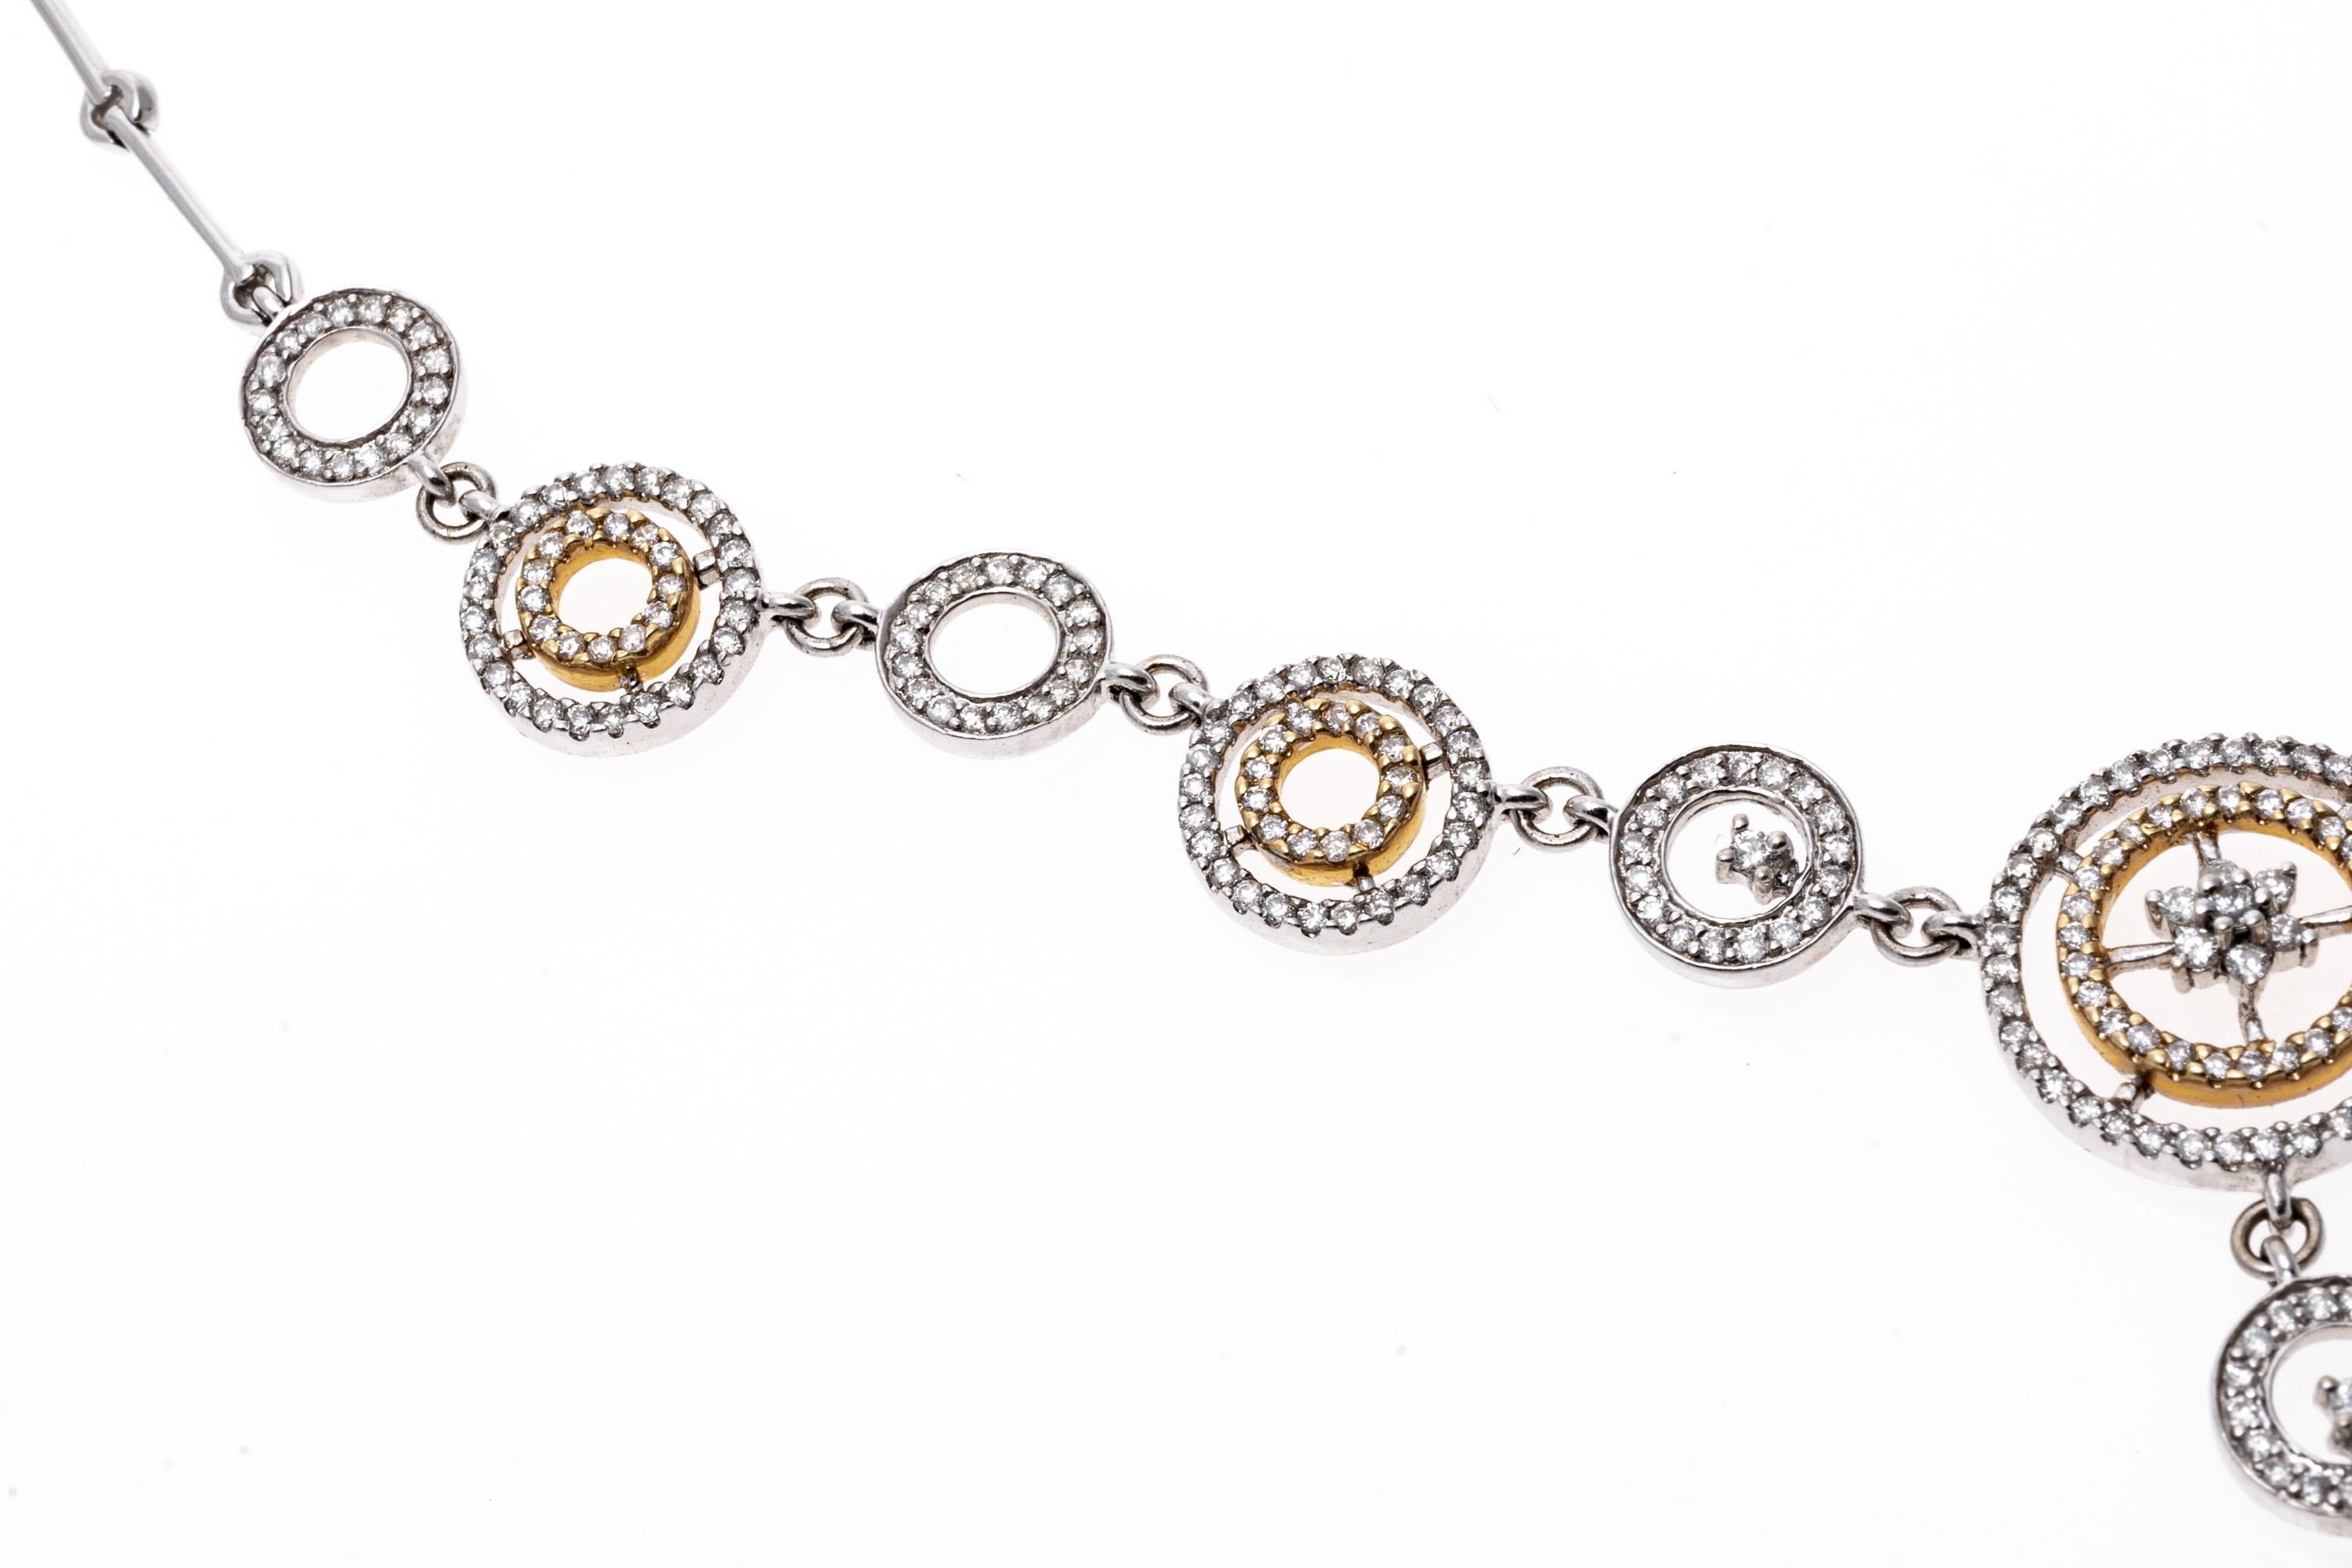 collier goutte circulaire en or blanc 14K et diamants sertis
Ce collier glamour à maillons en or blanc 14 carats présente des anneaux d'or blanc et jaune. Des diamants de taille ronde sont sertis à l'intérieur et au-dessus des anneaux et créent un